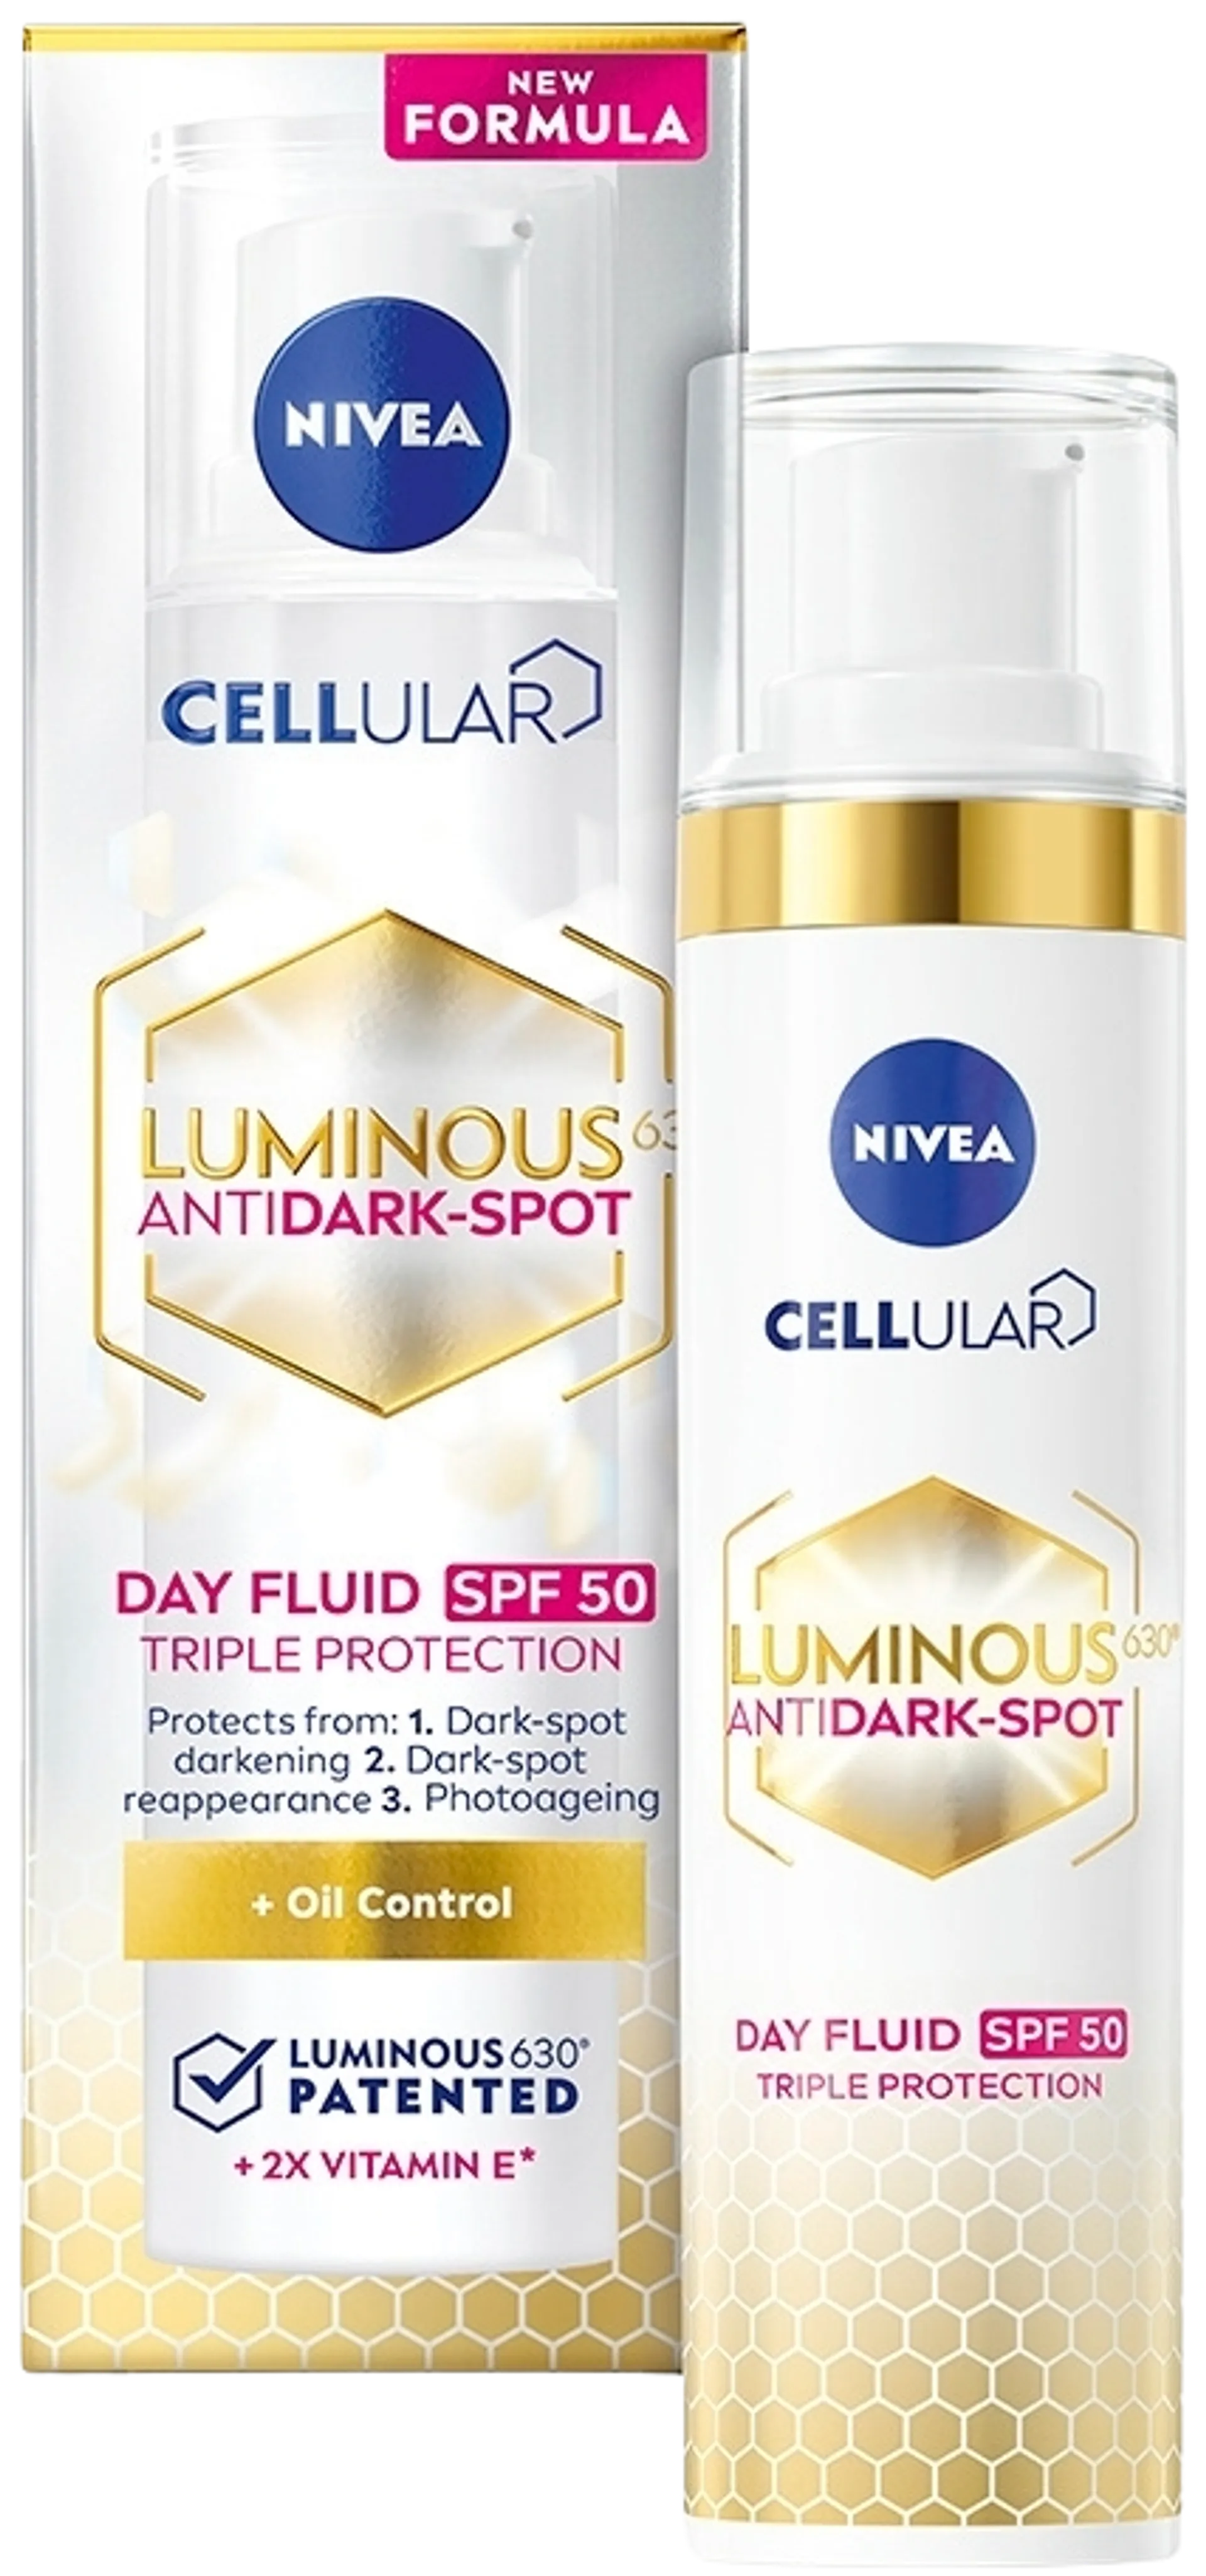 NIVEA 40ml Cellular Luminous630 Anti Dark-Spot Day Fluid sk 50 -päivävoide - 3